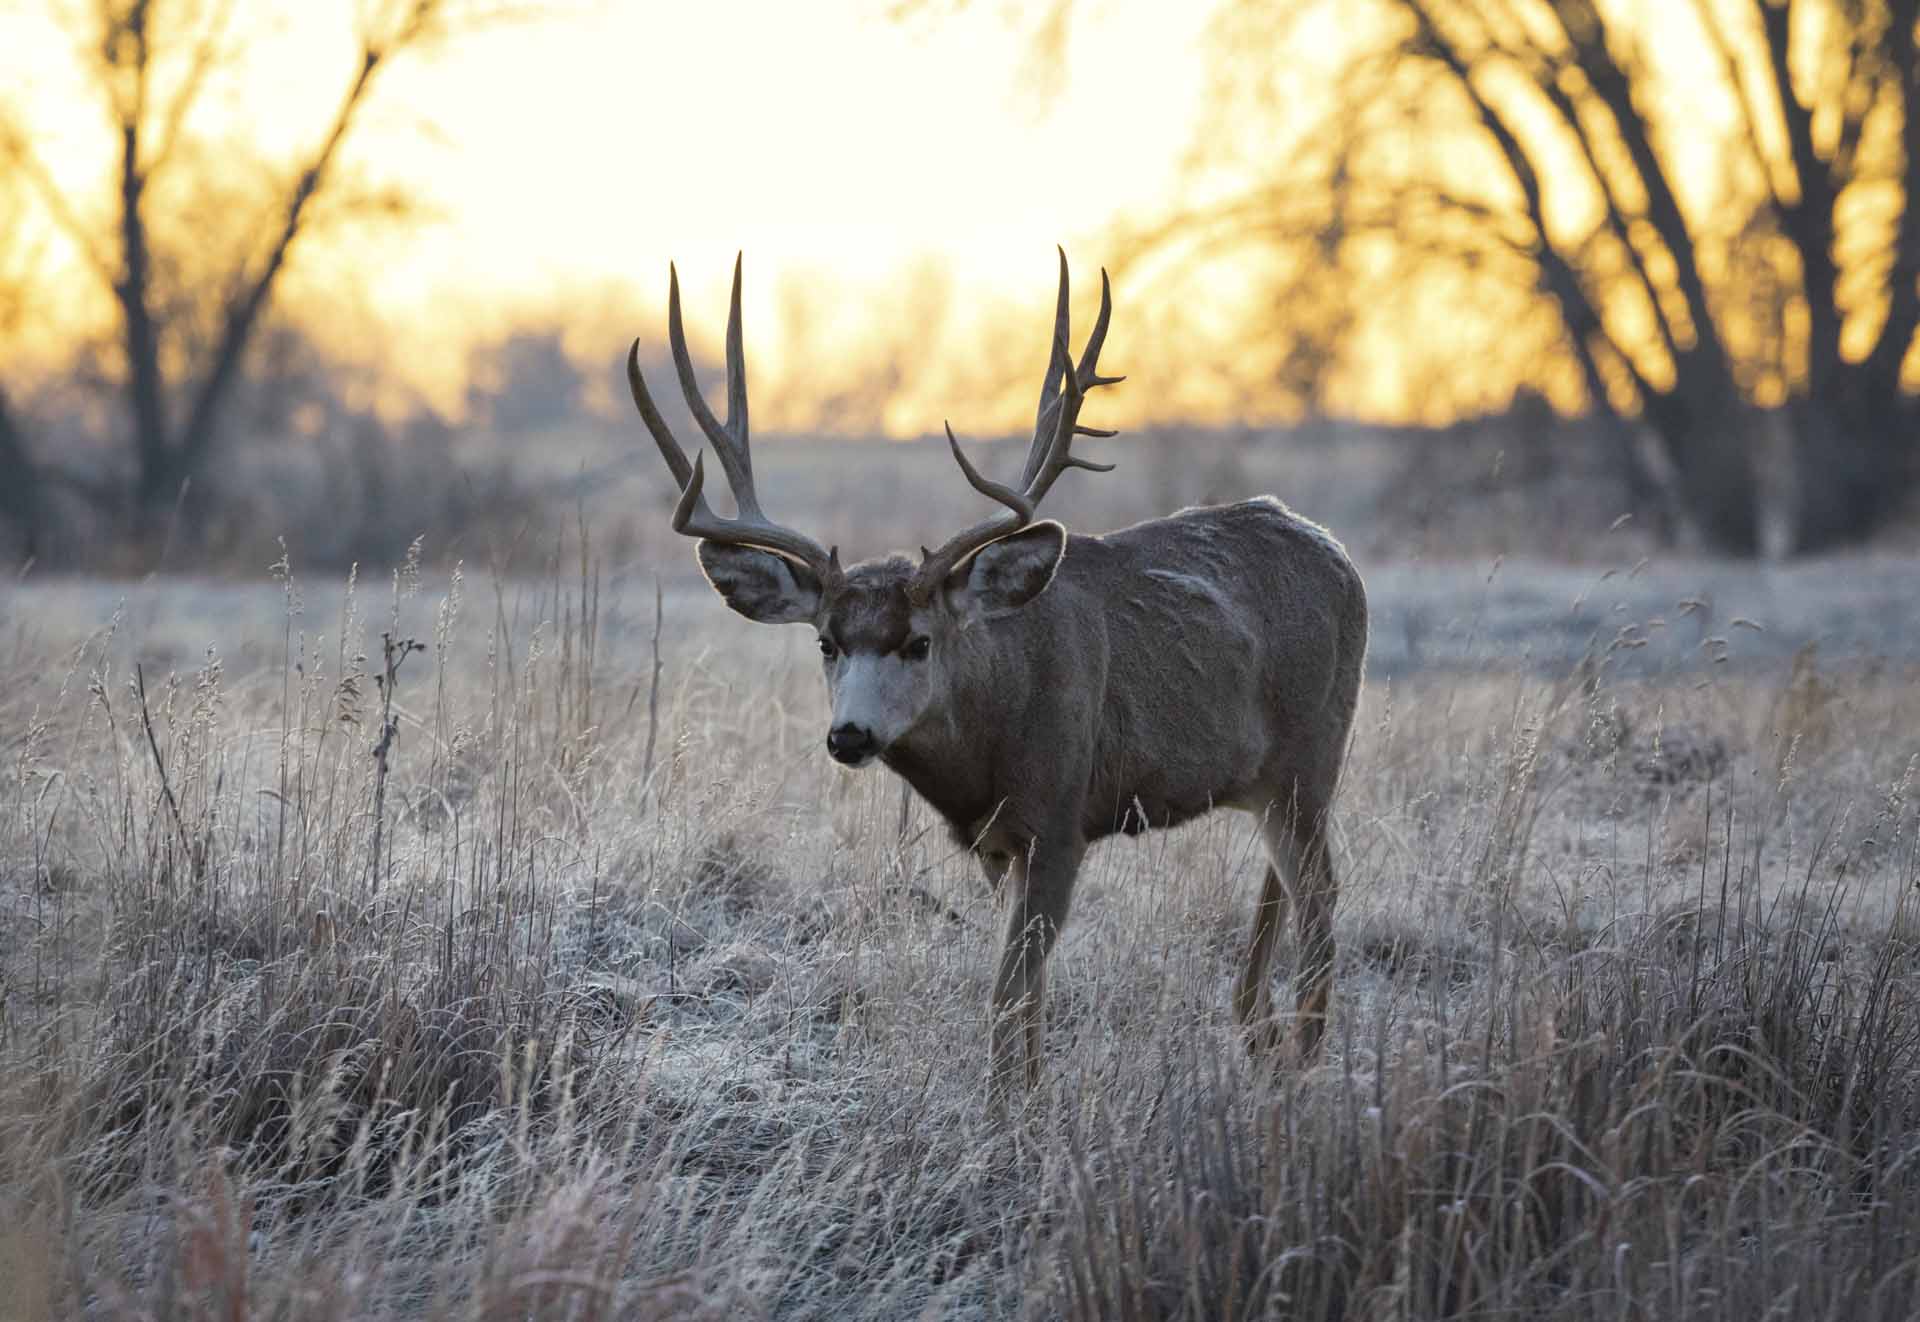 Deer Hunts